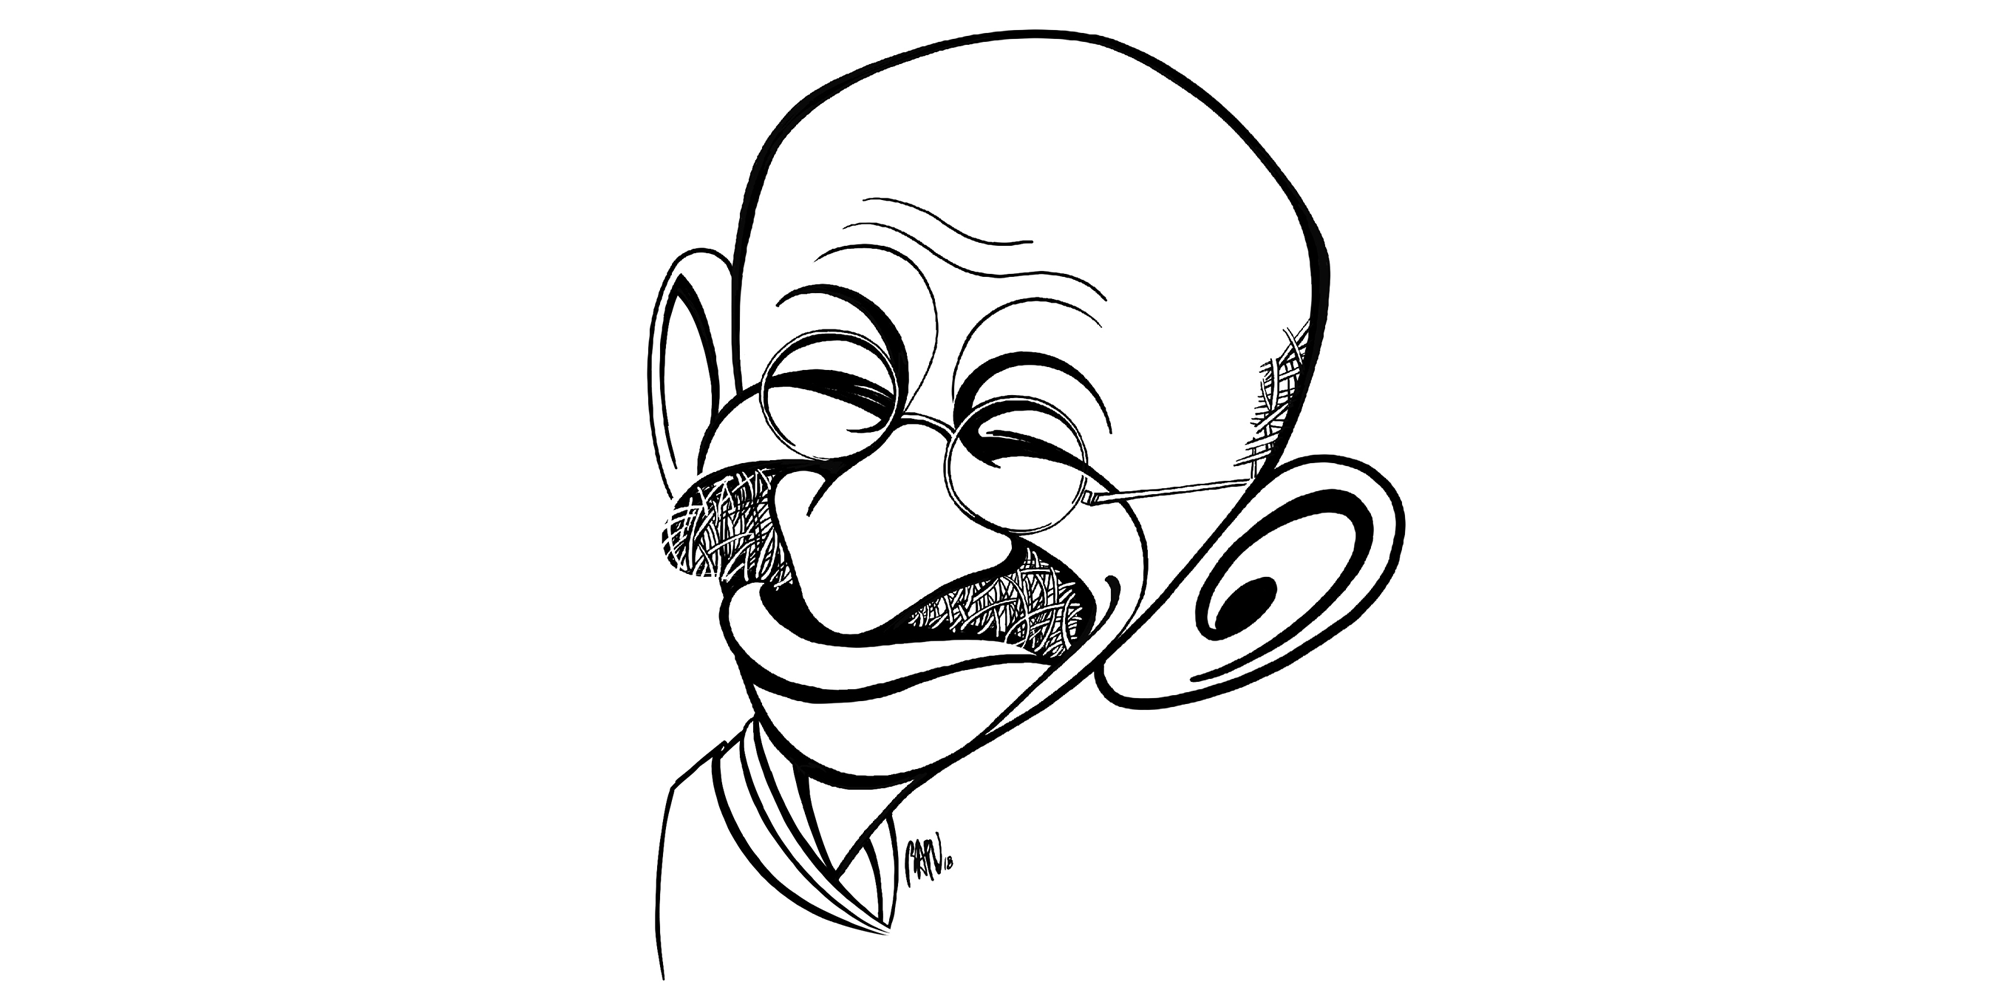 Caricatures of Gandhi